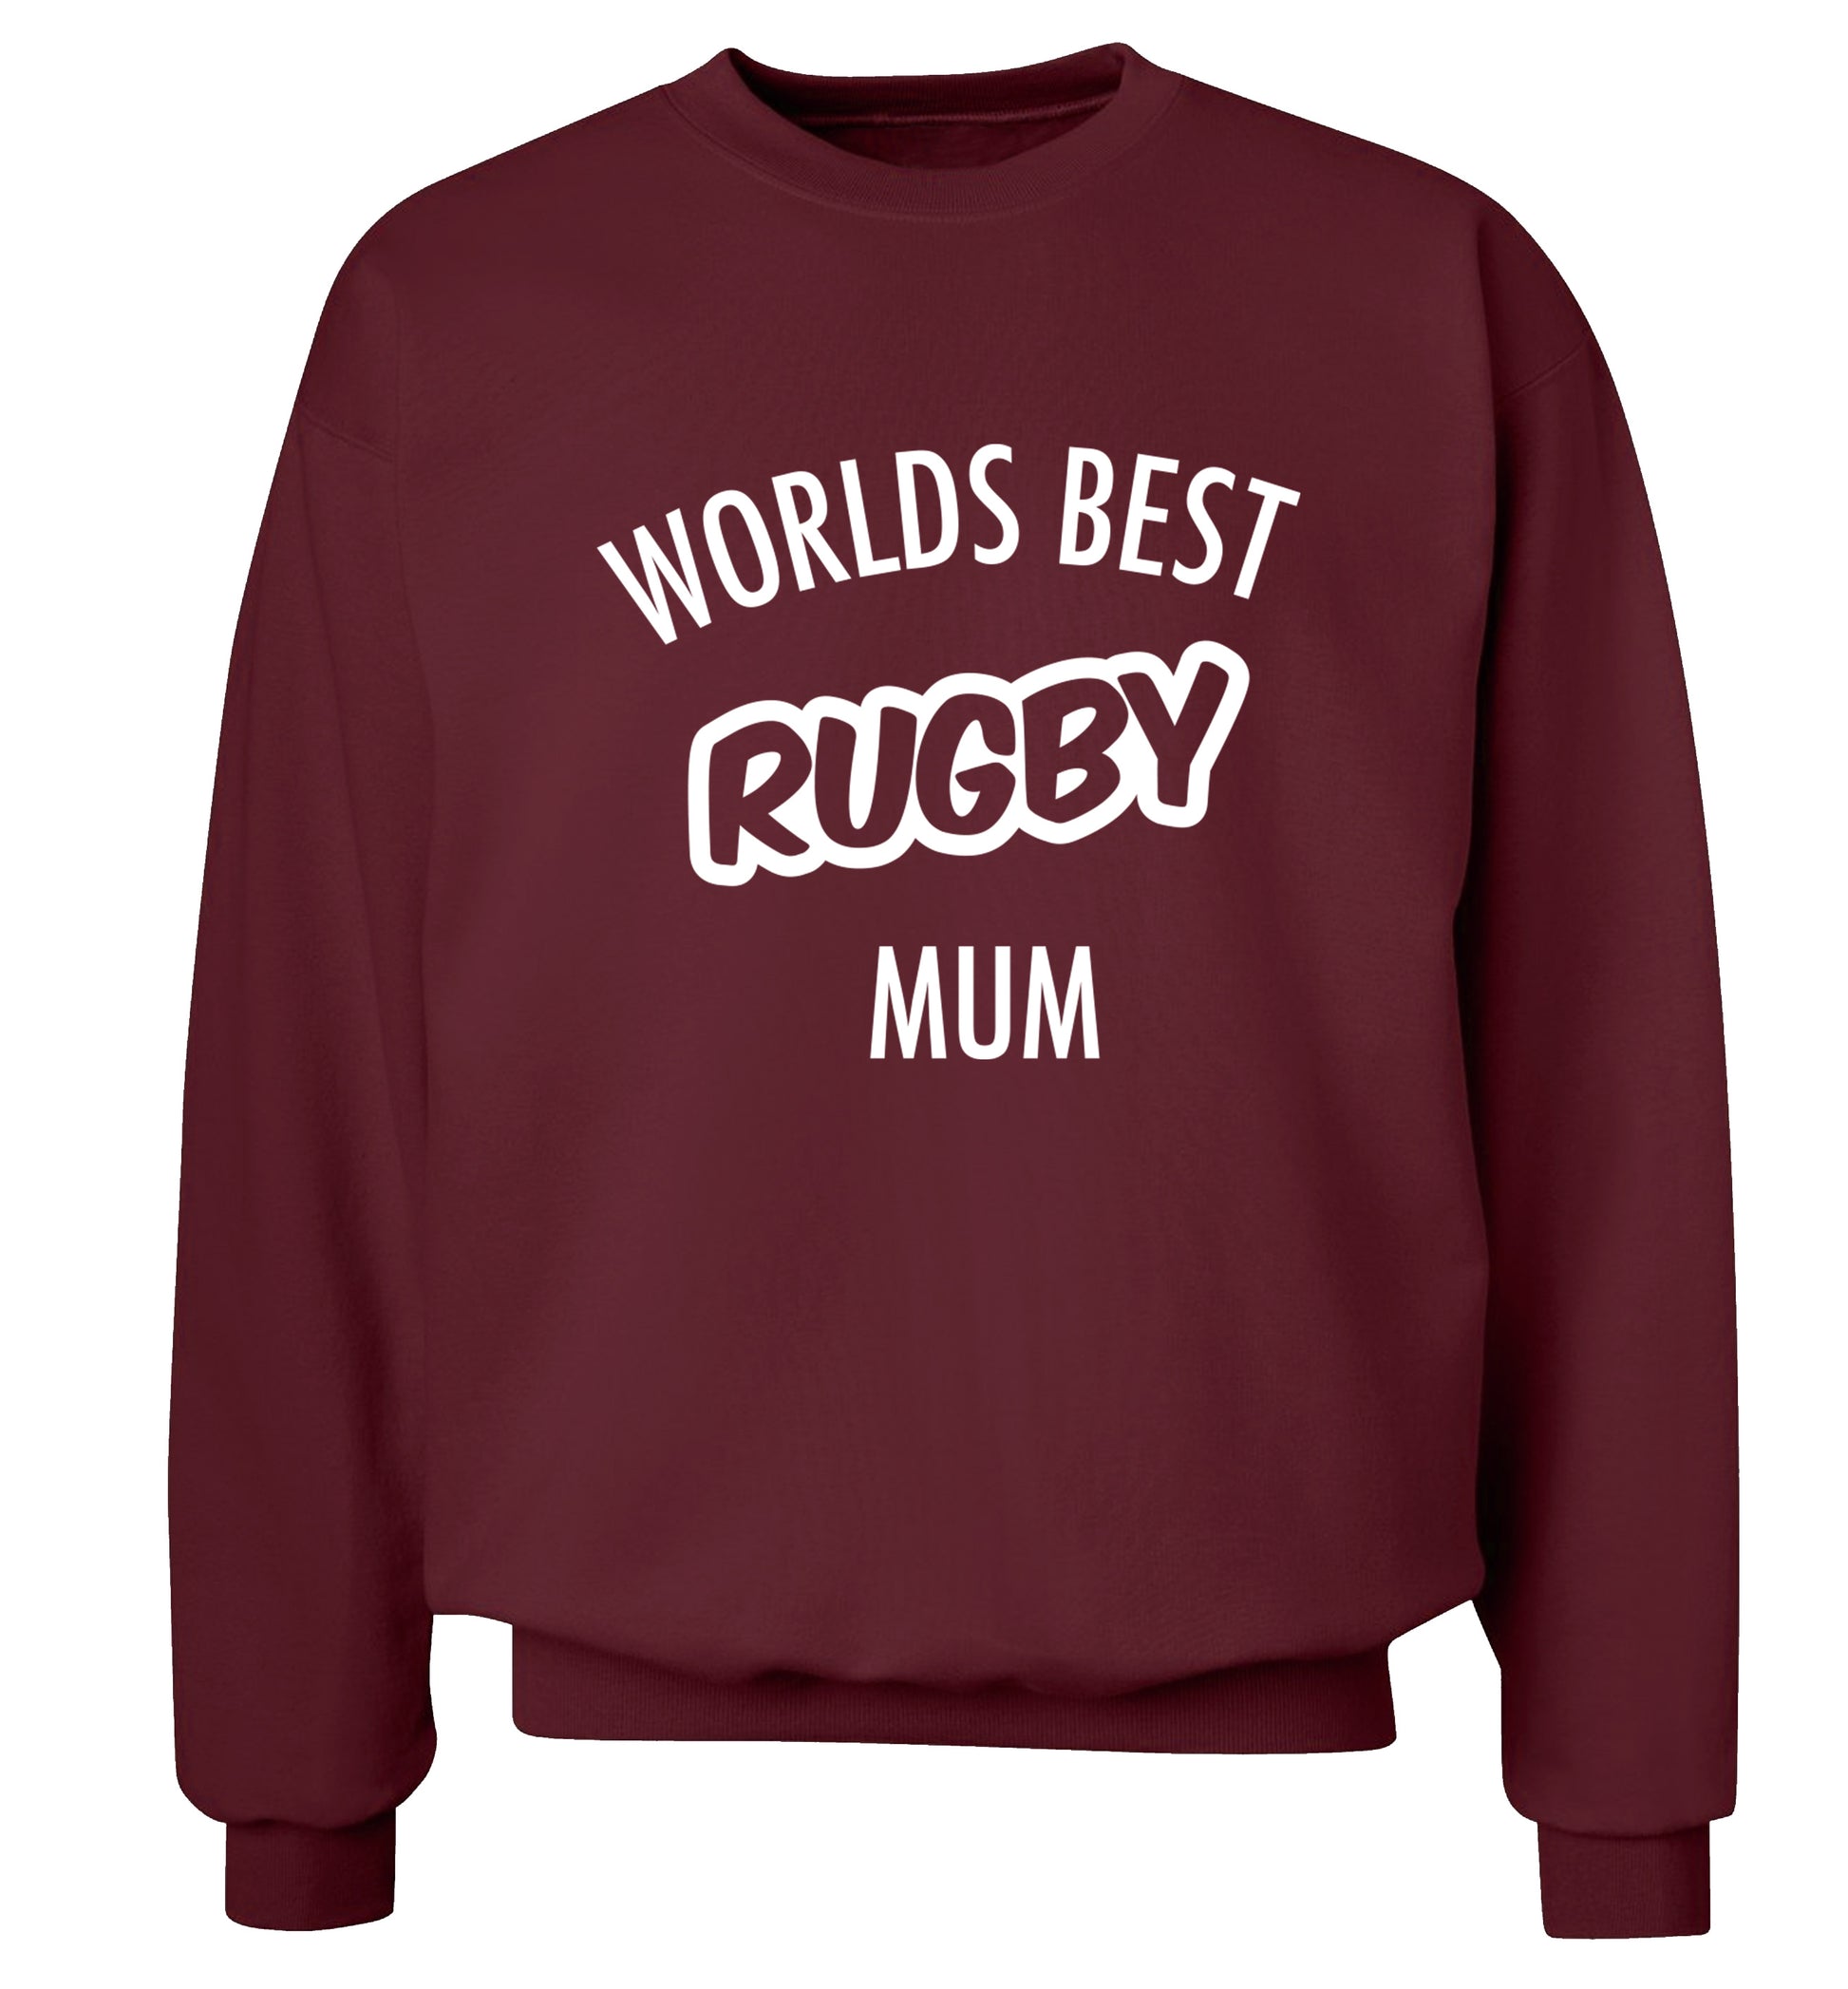 Worlds best rugby mum Adult's unisex maroon Sweater 2XL